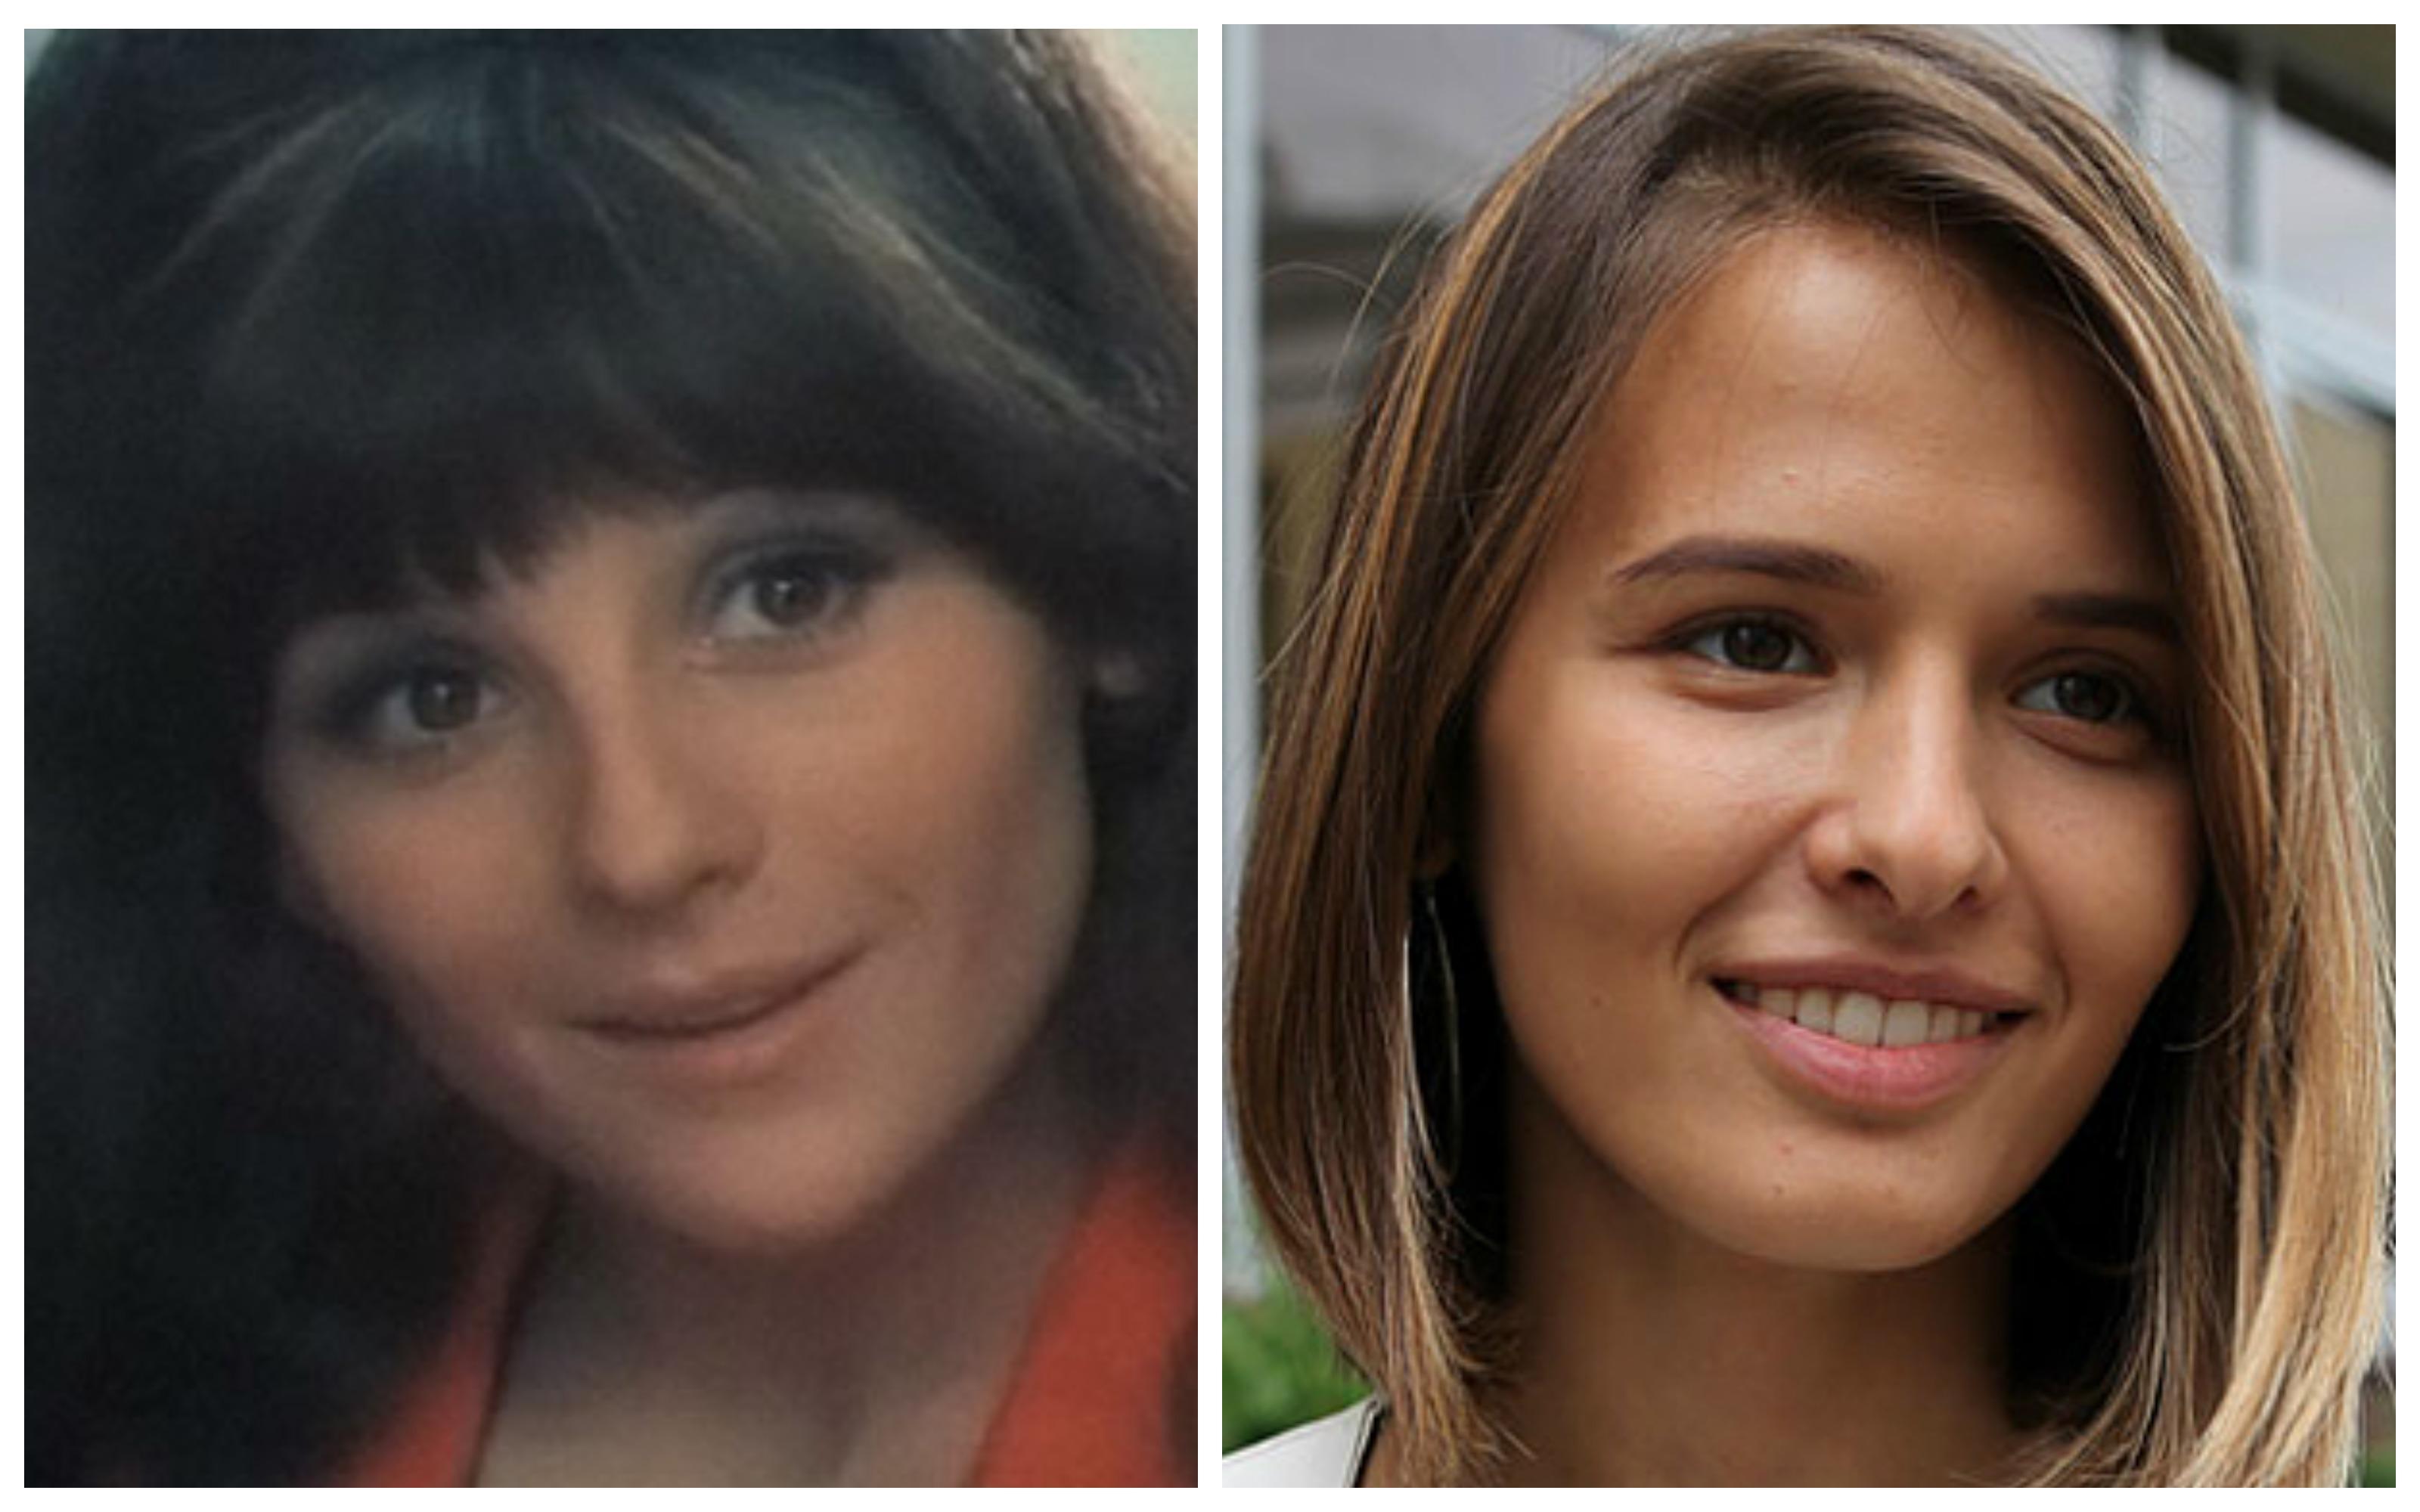 Разница на лицо: как выглядят советские и современные актрисы в одном и том же возрасте — 30 лет